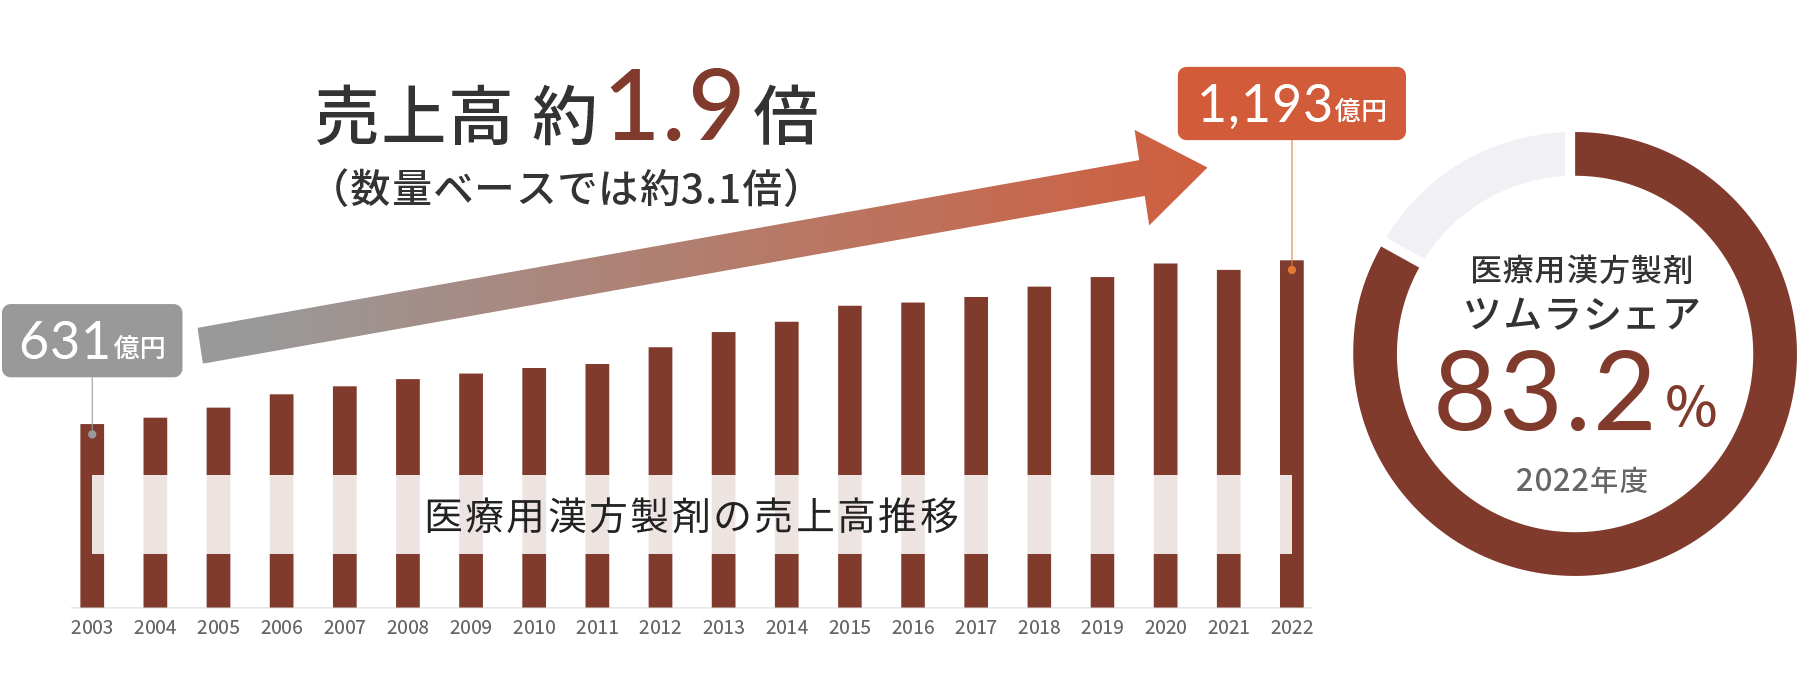 2003年から2022年までの医療用漢方製剤の売上高推移